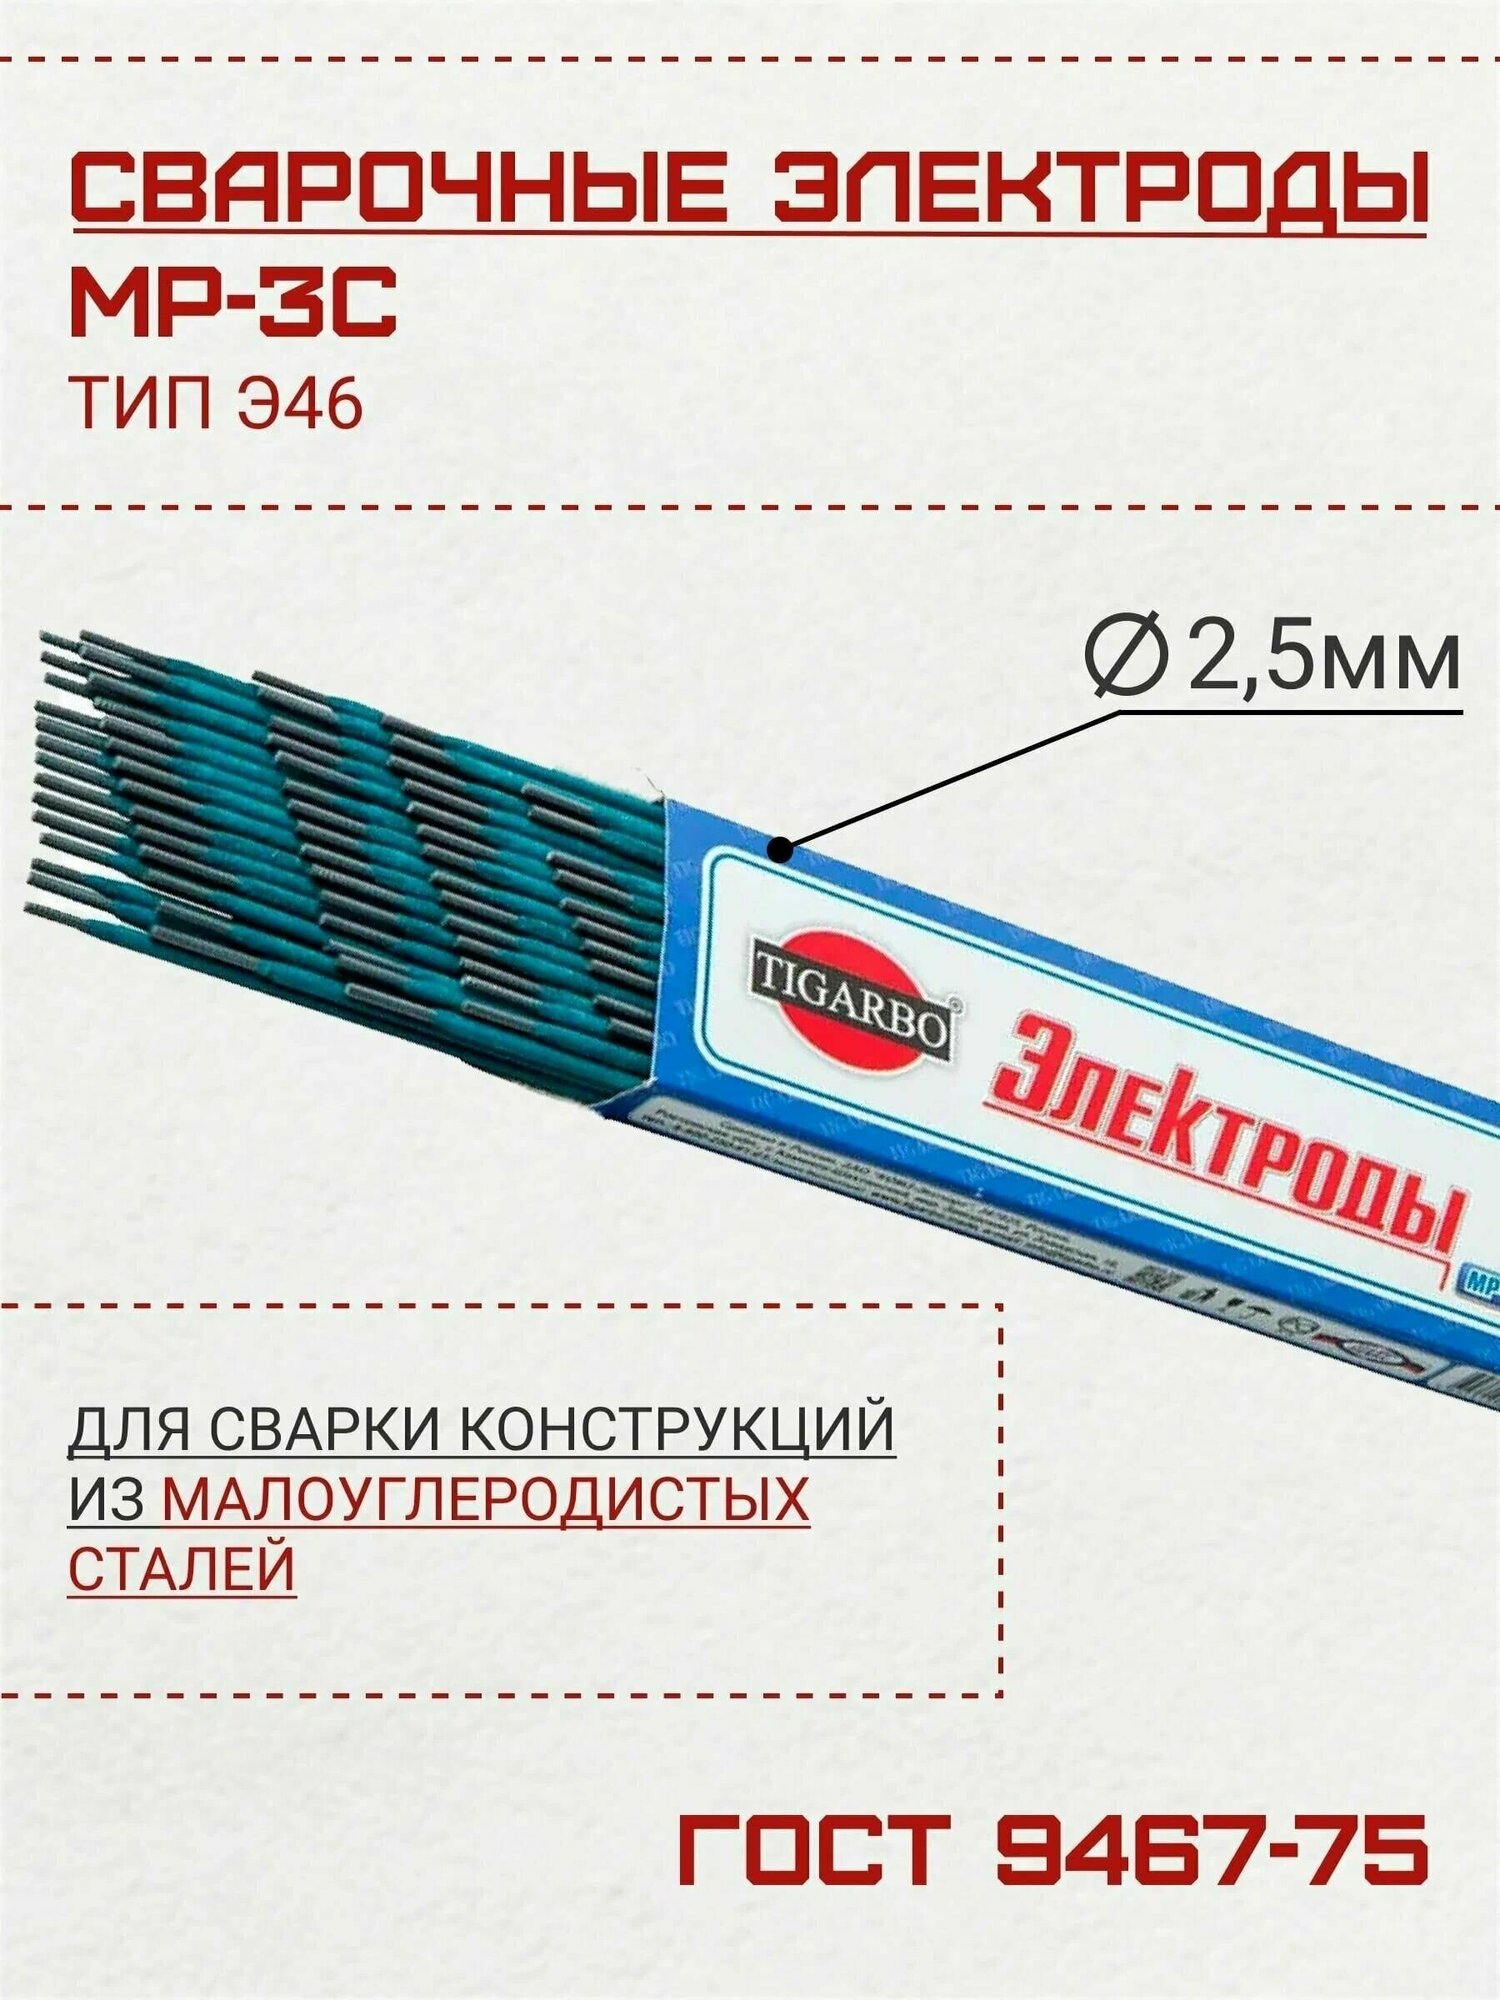 Электроды TIGARBO МР-3С диаметр 25 (1 кг)